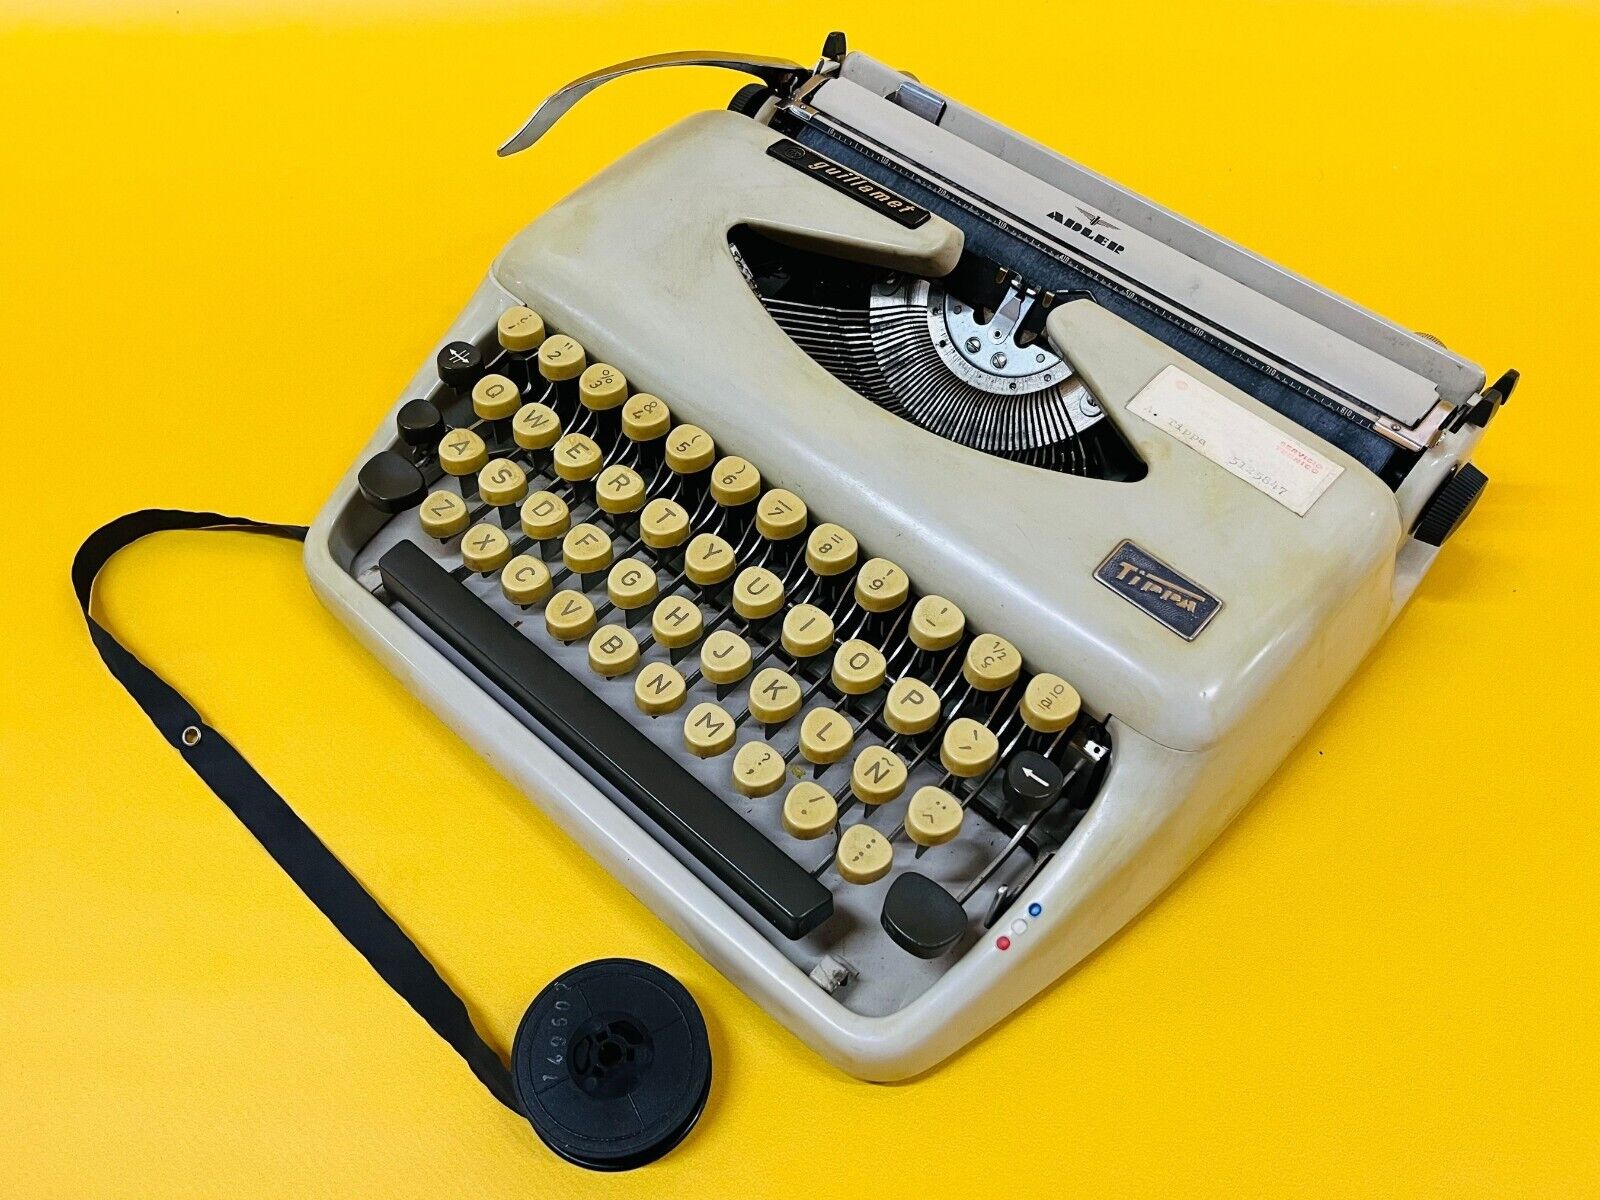 Working Typewriter ADLER TIPPA Guillamet Vintage Gray Typewriter with Case 1970s